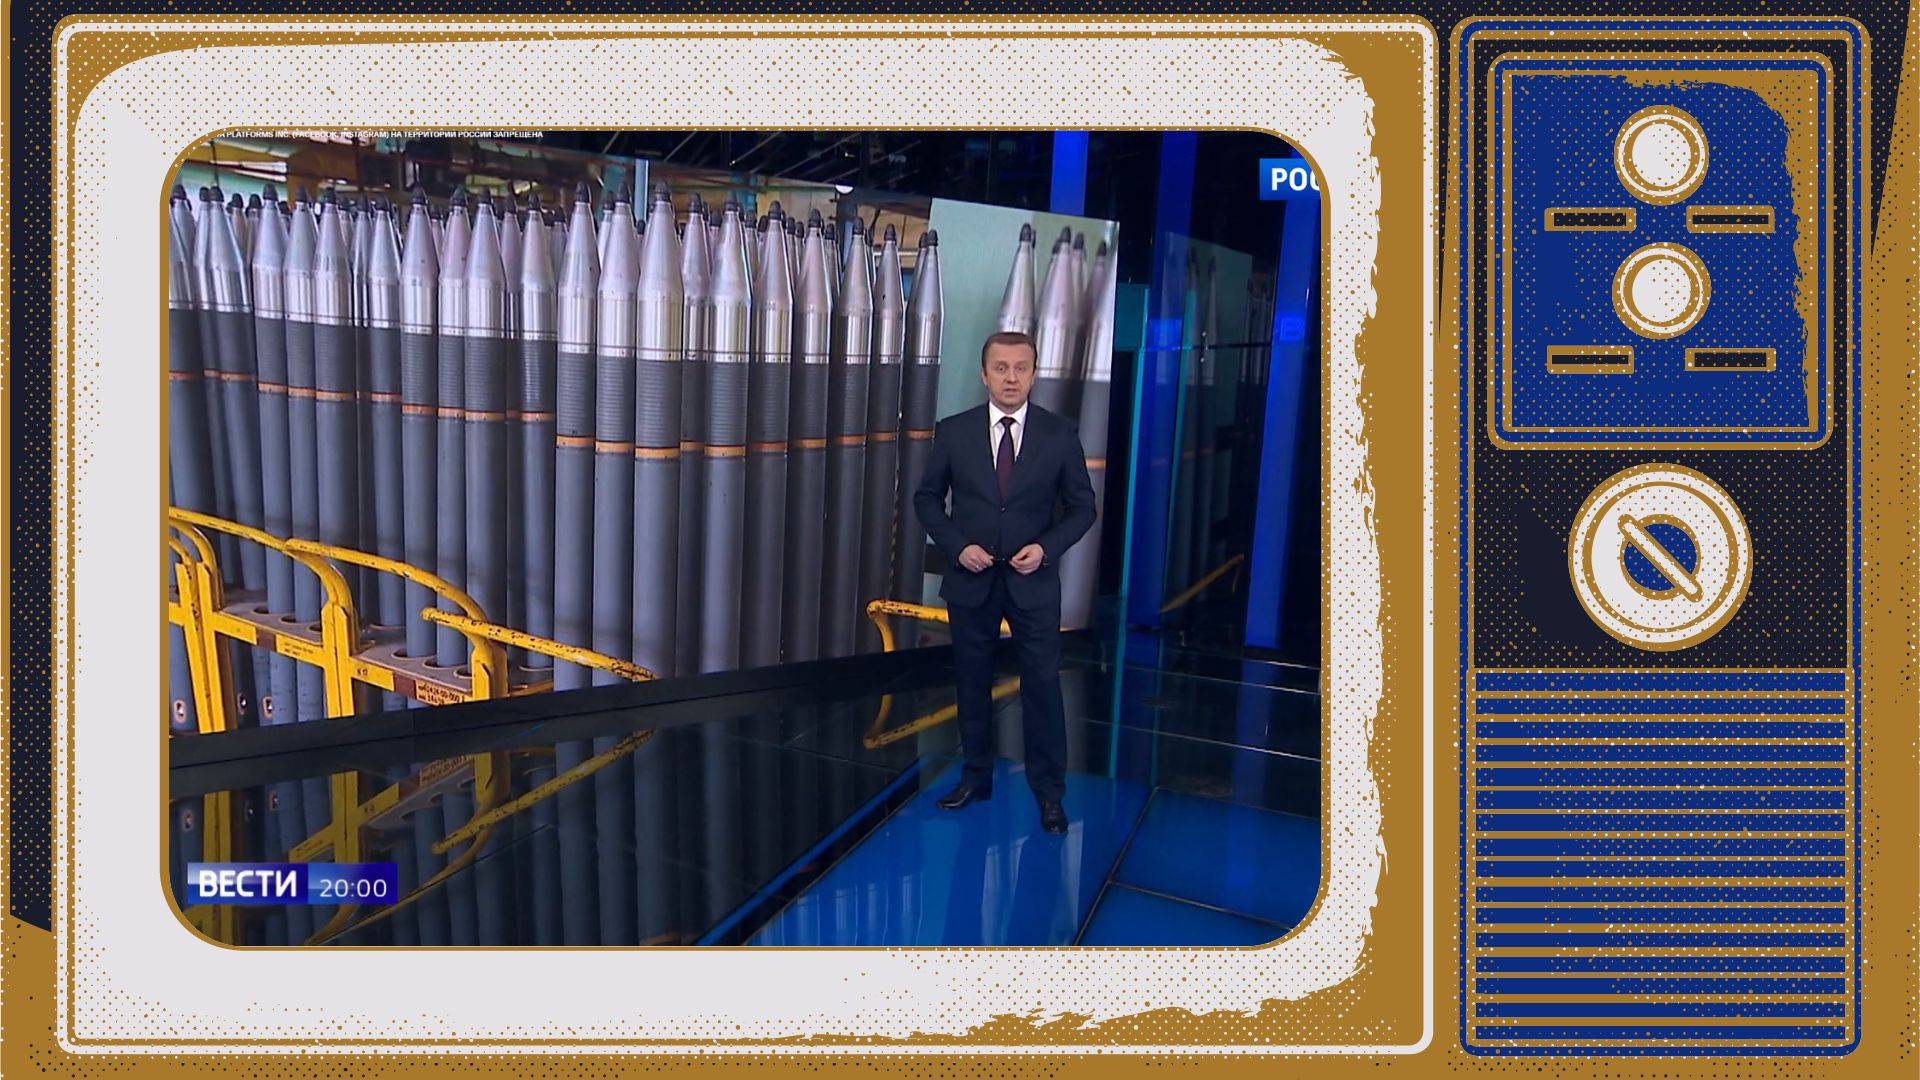 Grafika: w ramce starego telewizora zdjęcie ze studia TV, gdzie prezenter pokazuje na ekranie transporter pełen naboi